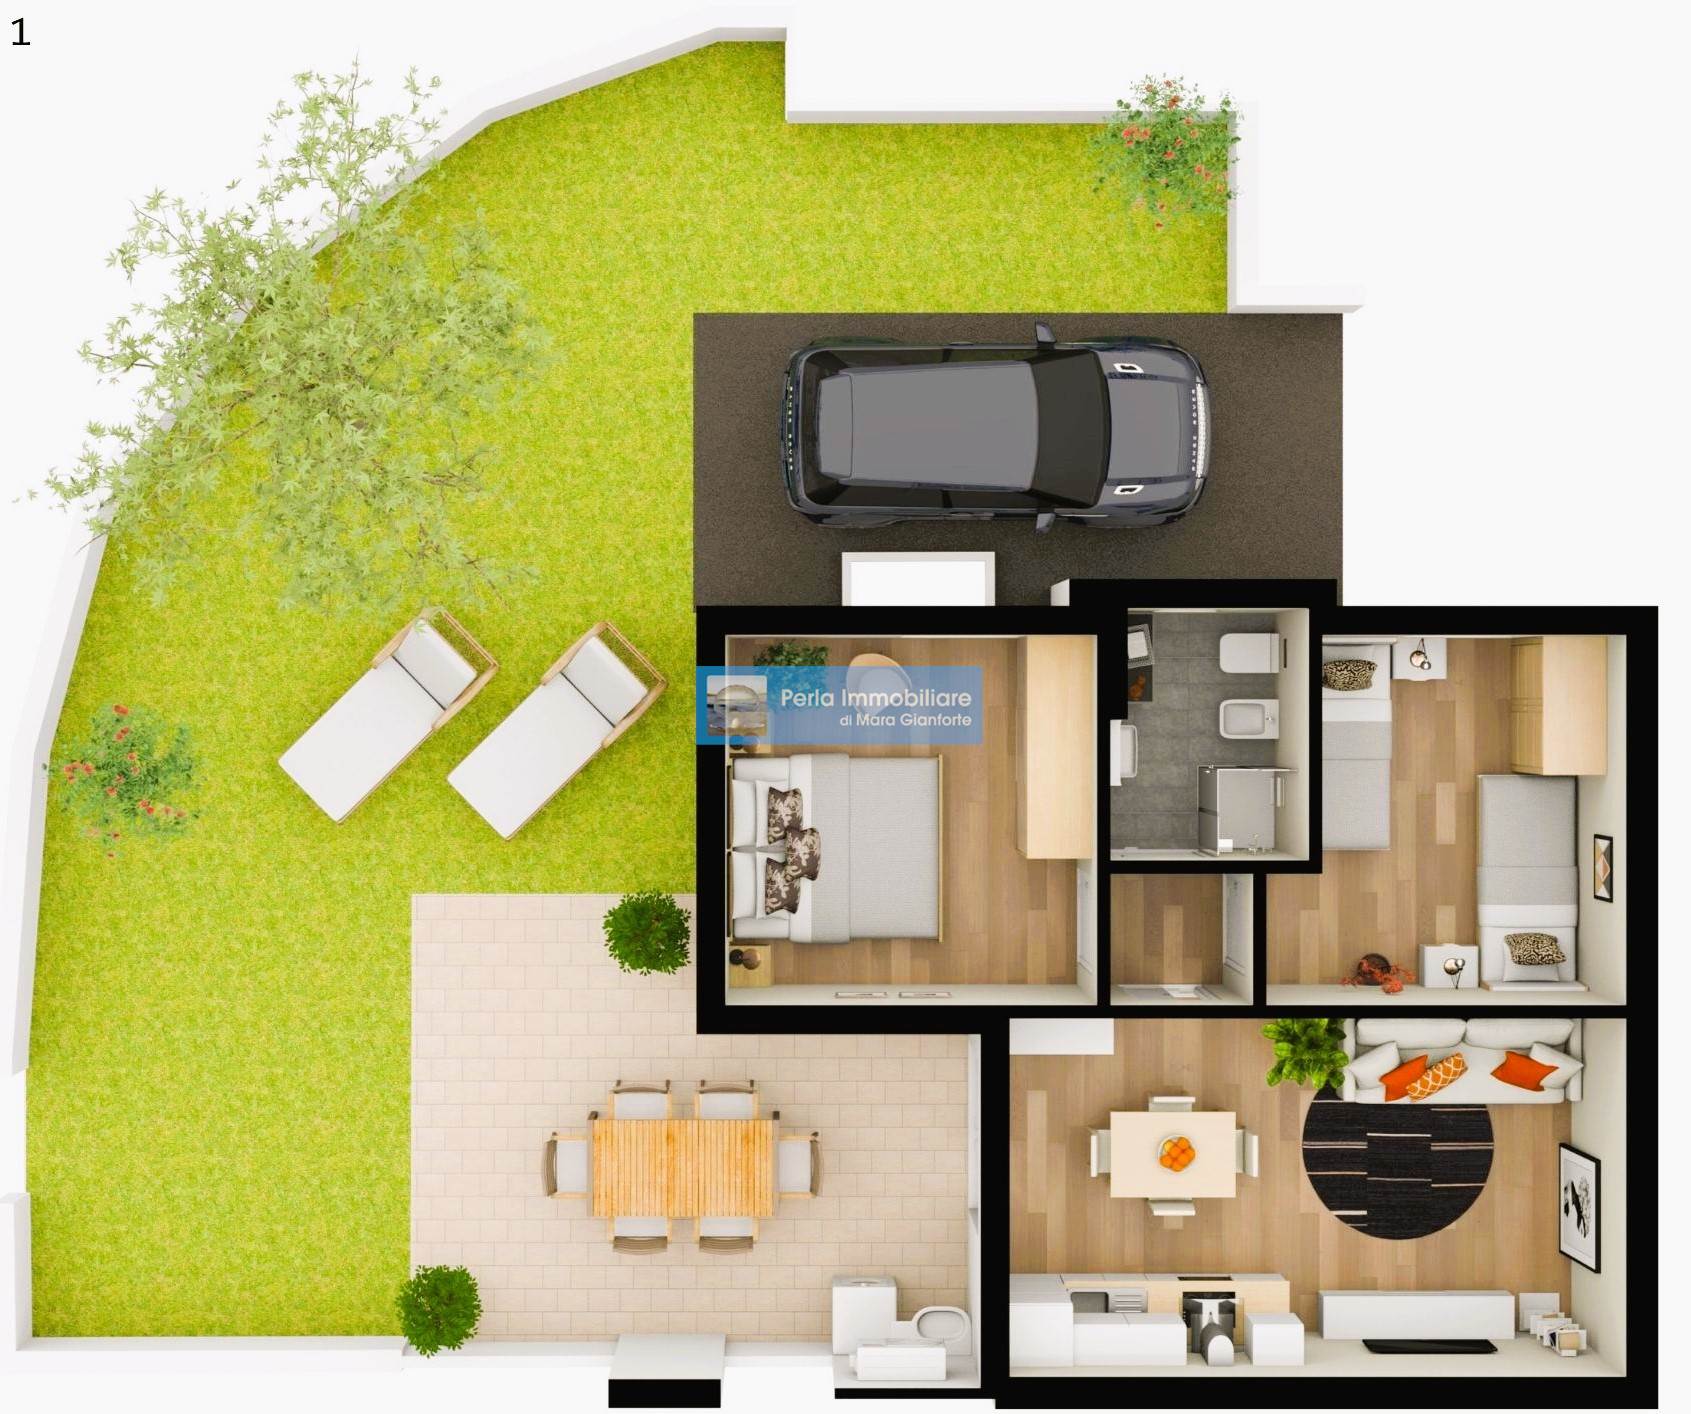 Come vorresti la tua casa? Mara Gianforte di Perla Immobiliare fa diventare realtà i tuoi sogni